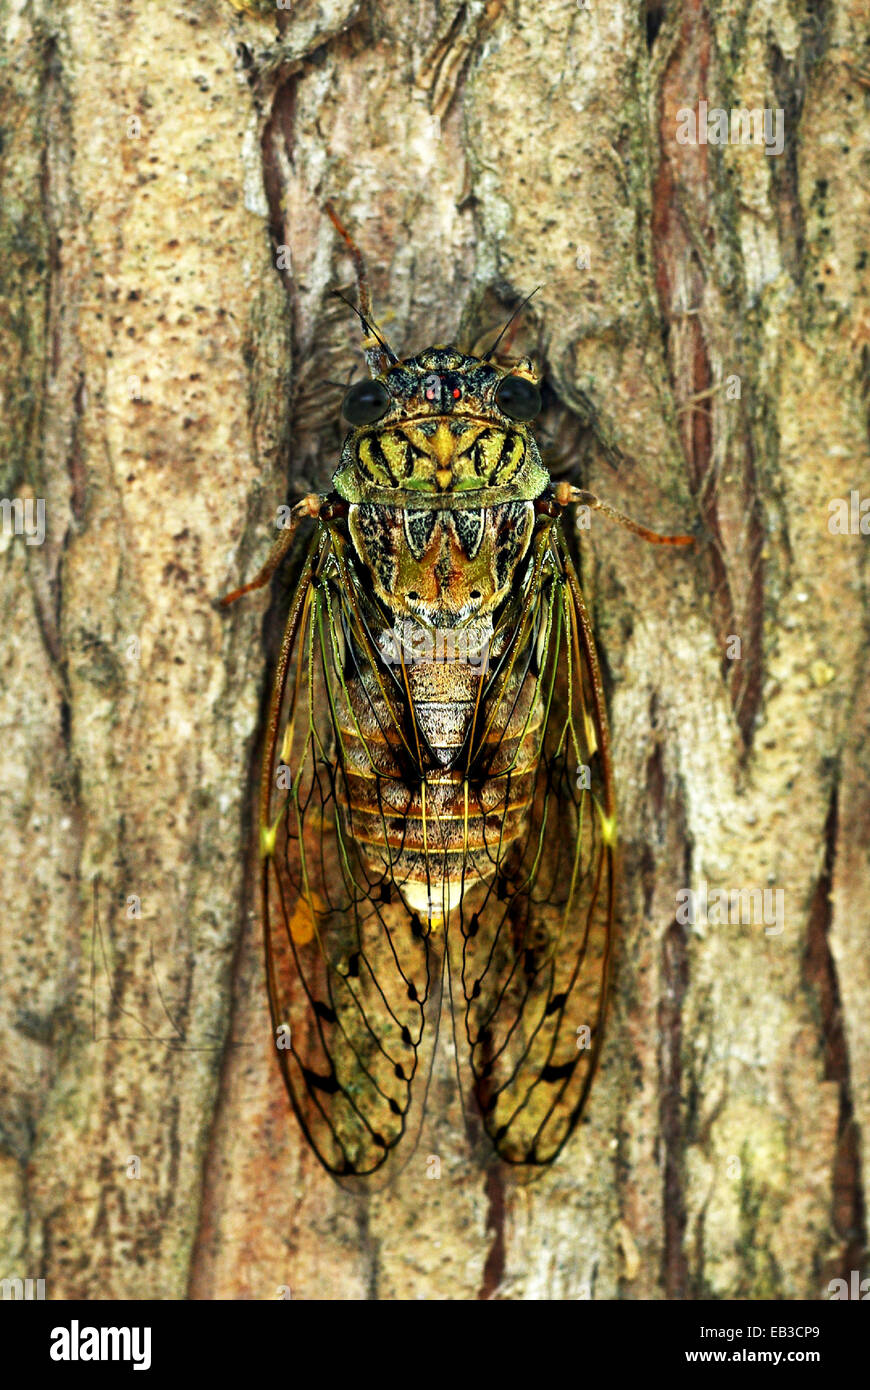 Italy, Cicada on tree Stock Photo